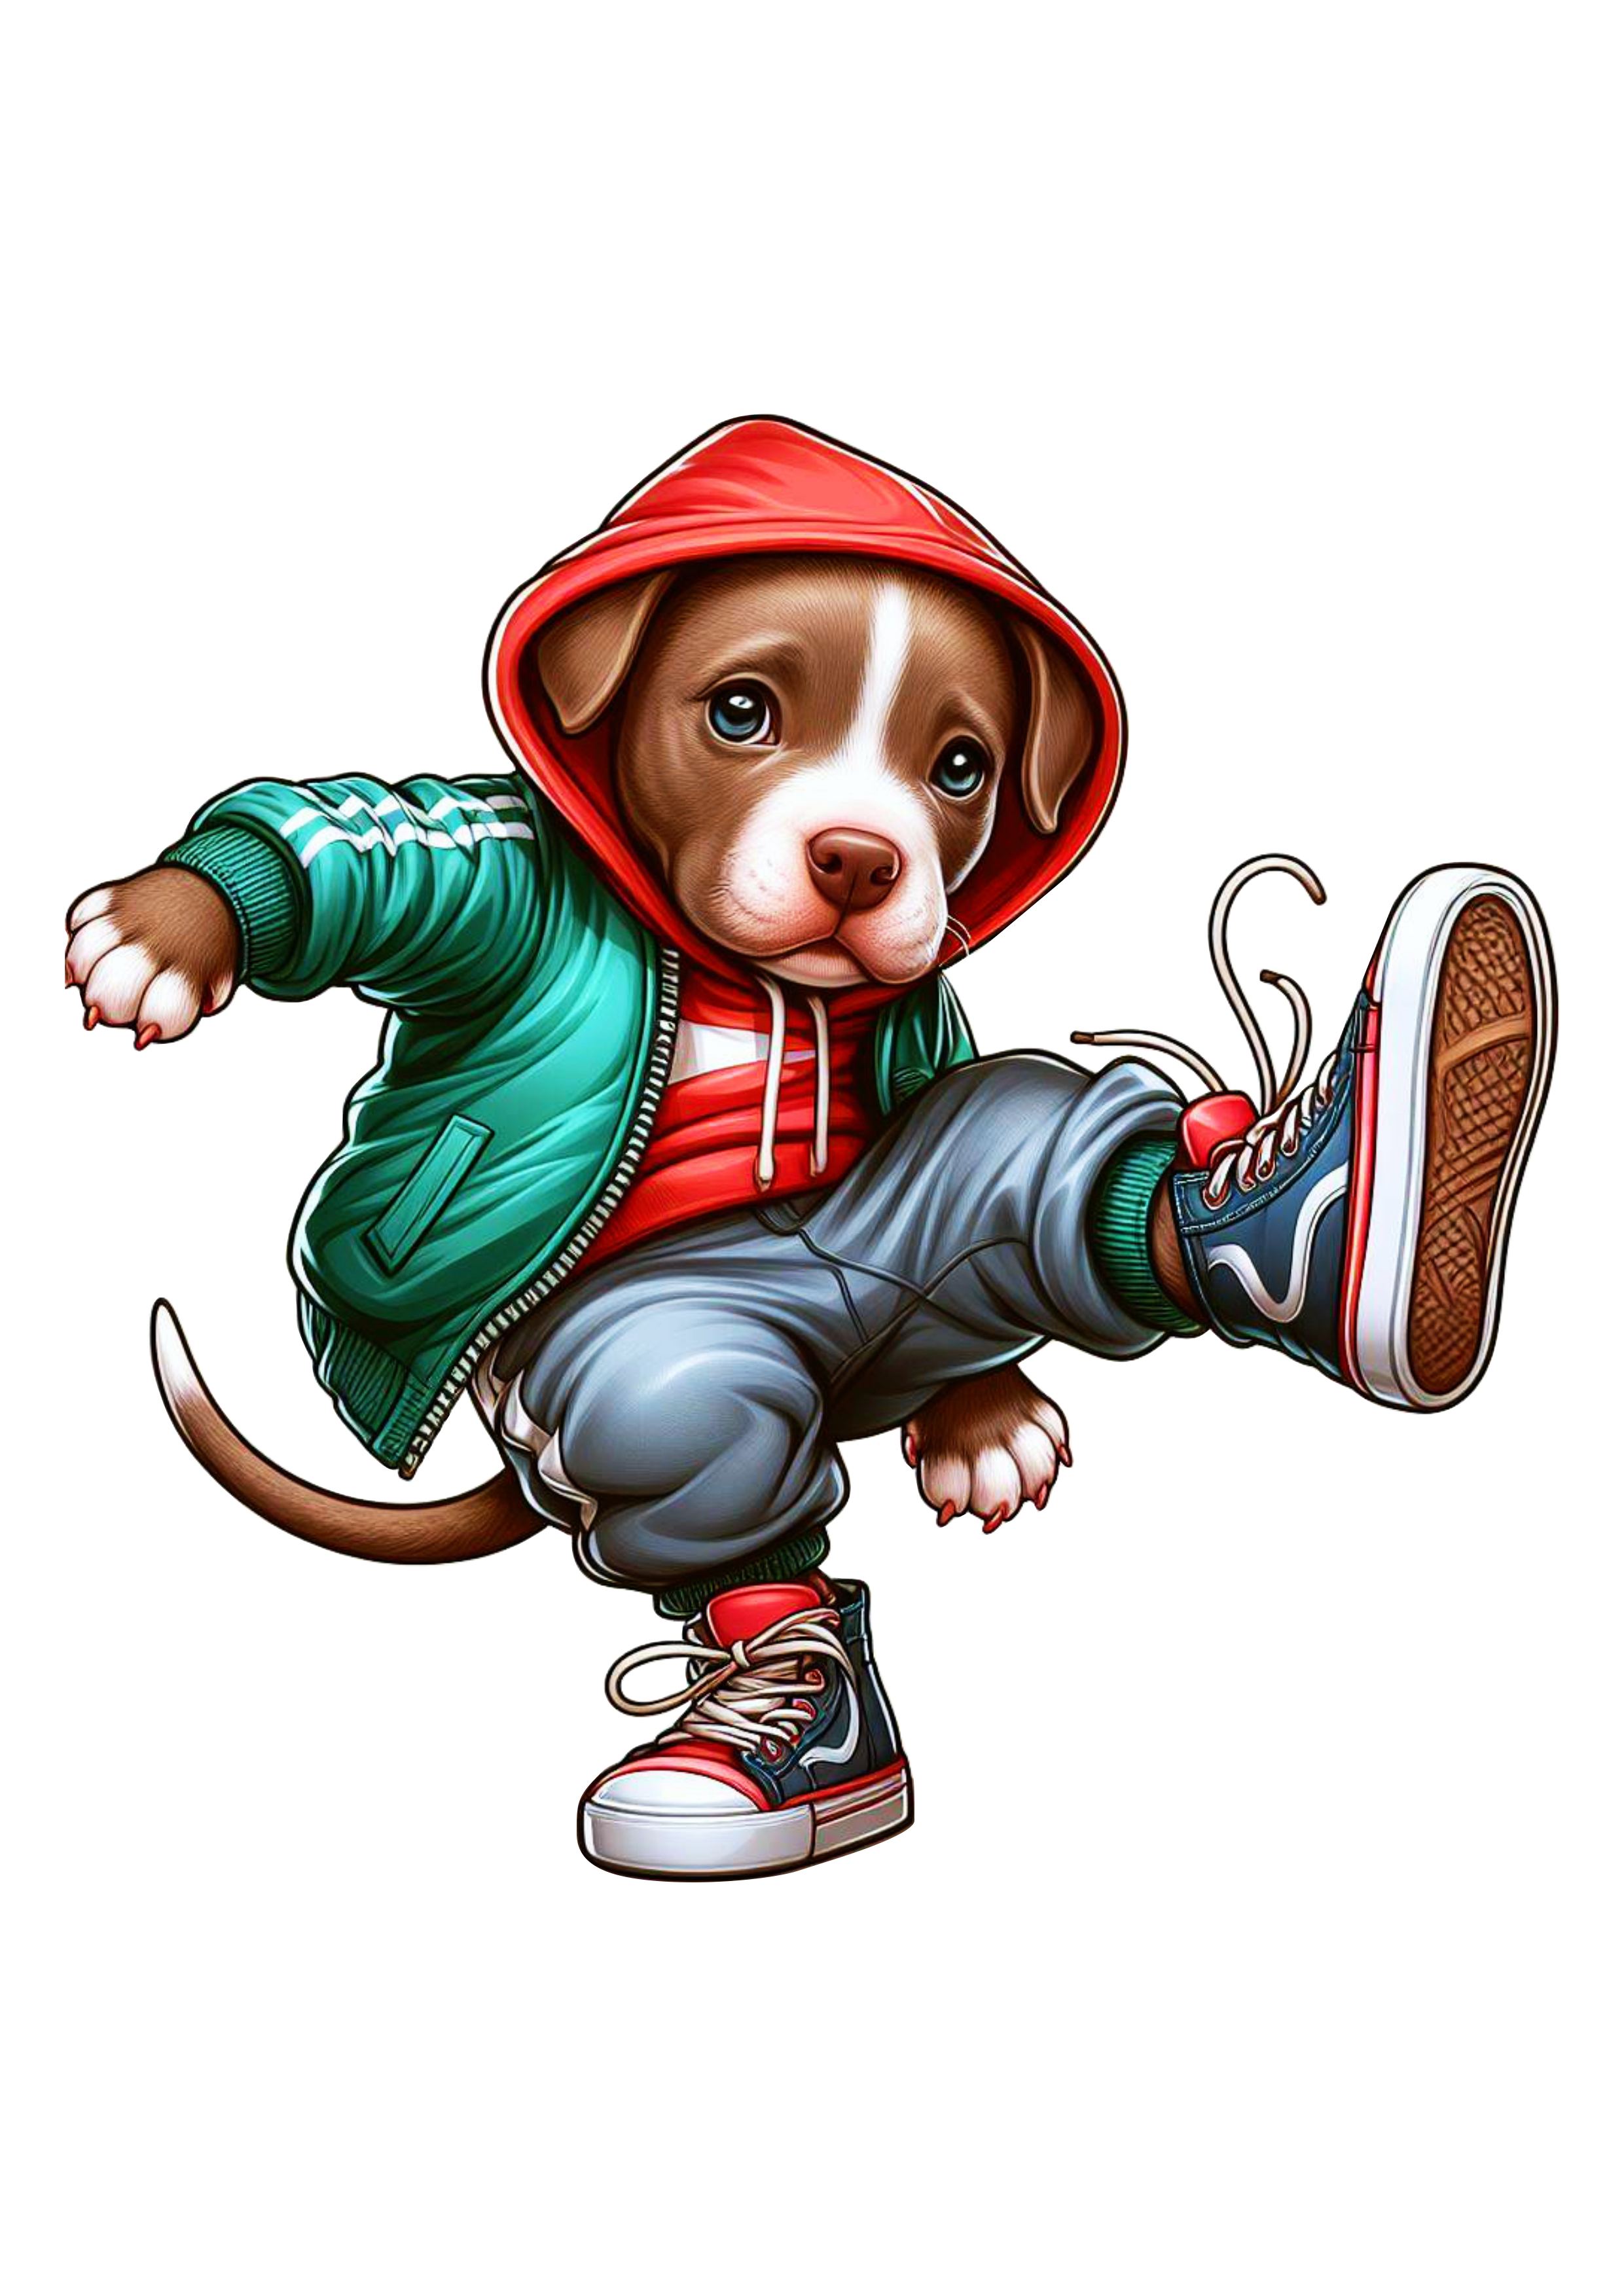 Pitbull cachorro fofinho de moletom vermelho dançando breakdance Power move png